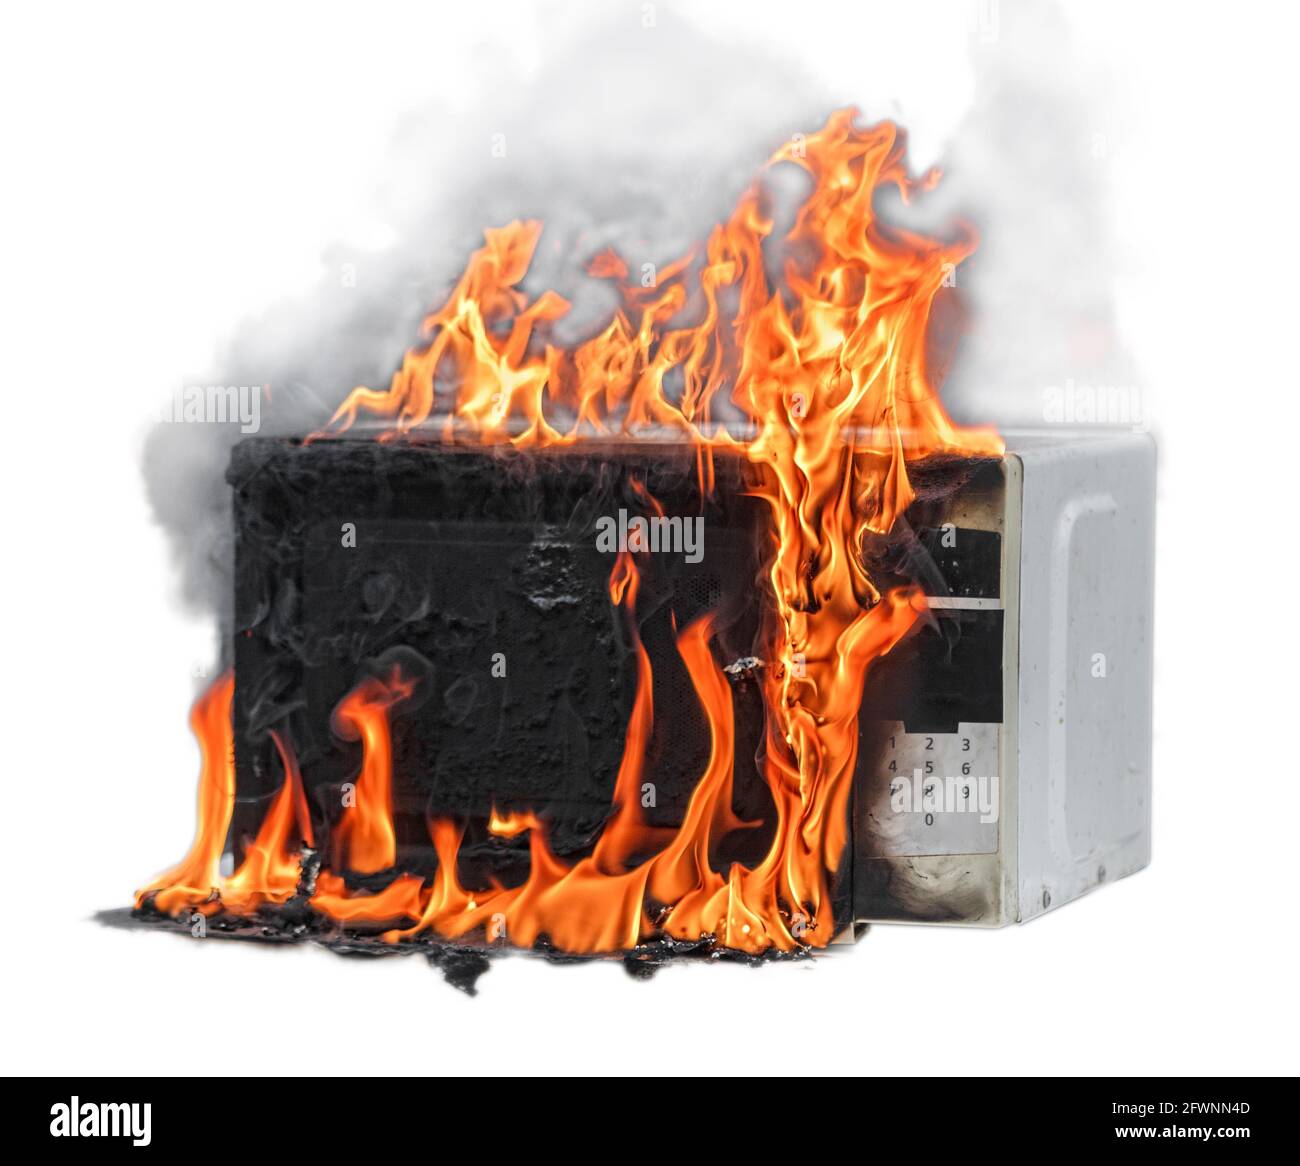 Mikrowellenofen brennt, Hausbrand aufgrund von unsachgemäßem Betrieb, spontane Verbrennung fehlerhafter Geräte isoliert Stockfoto